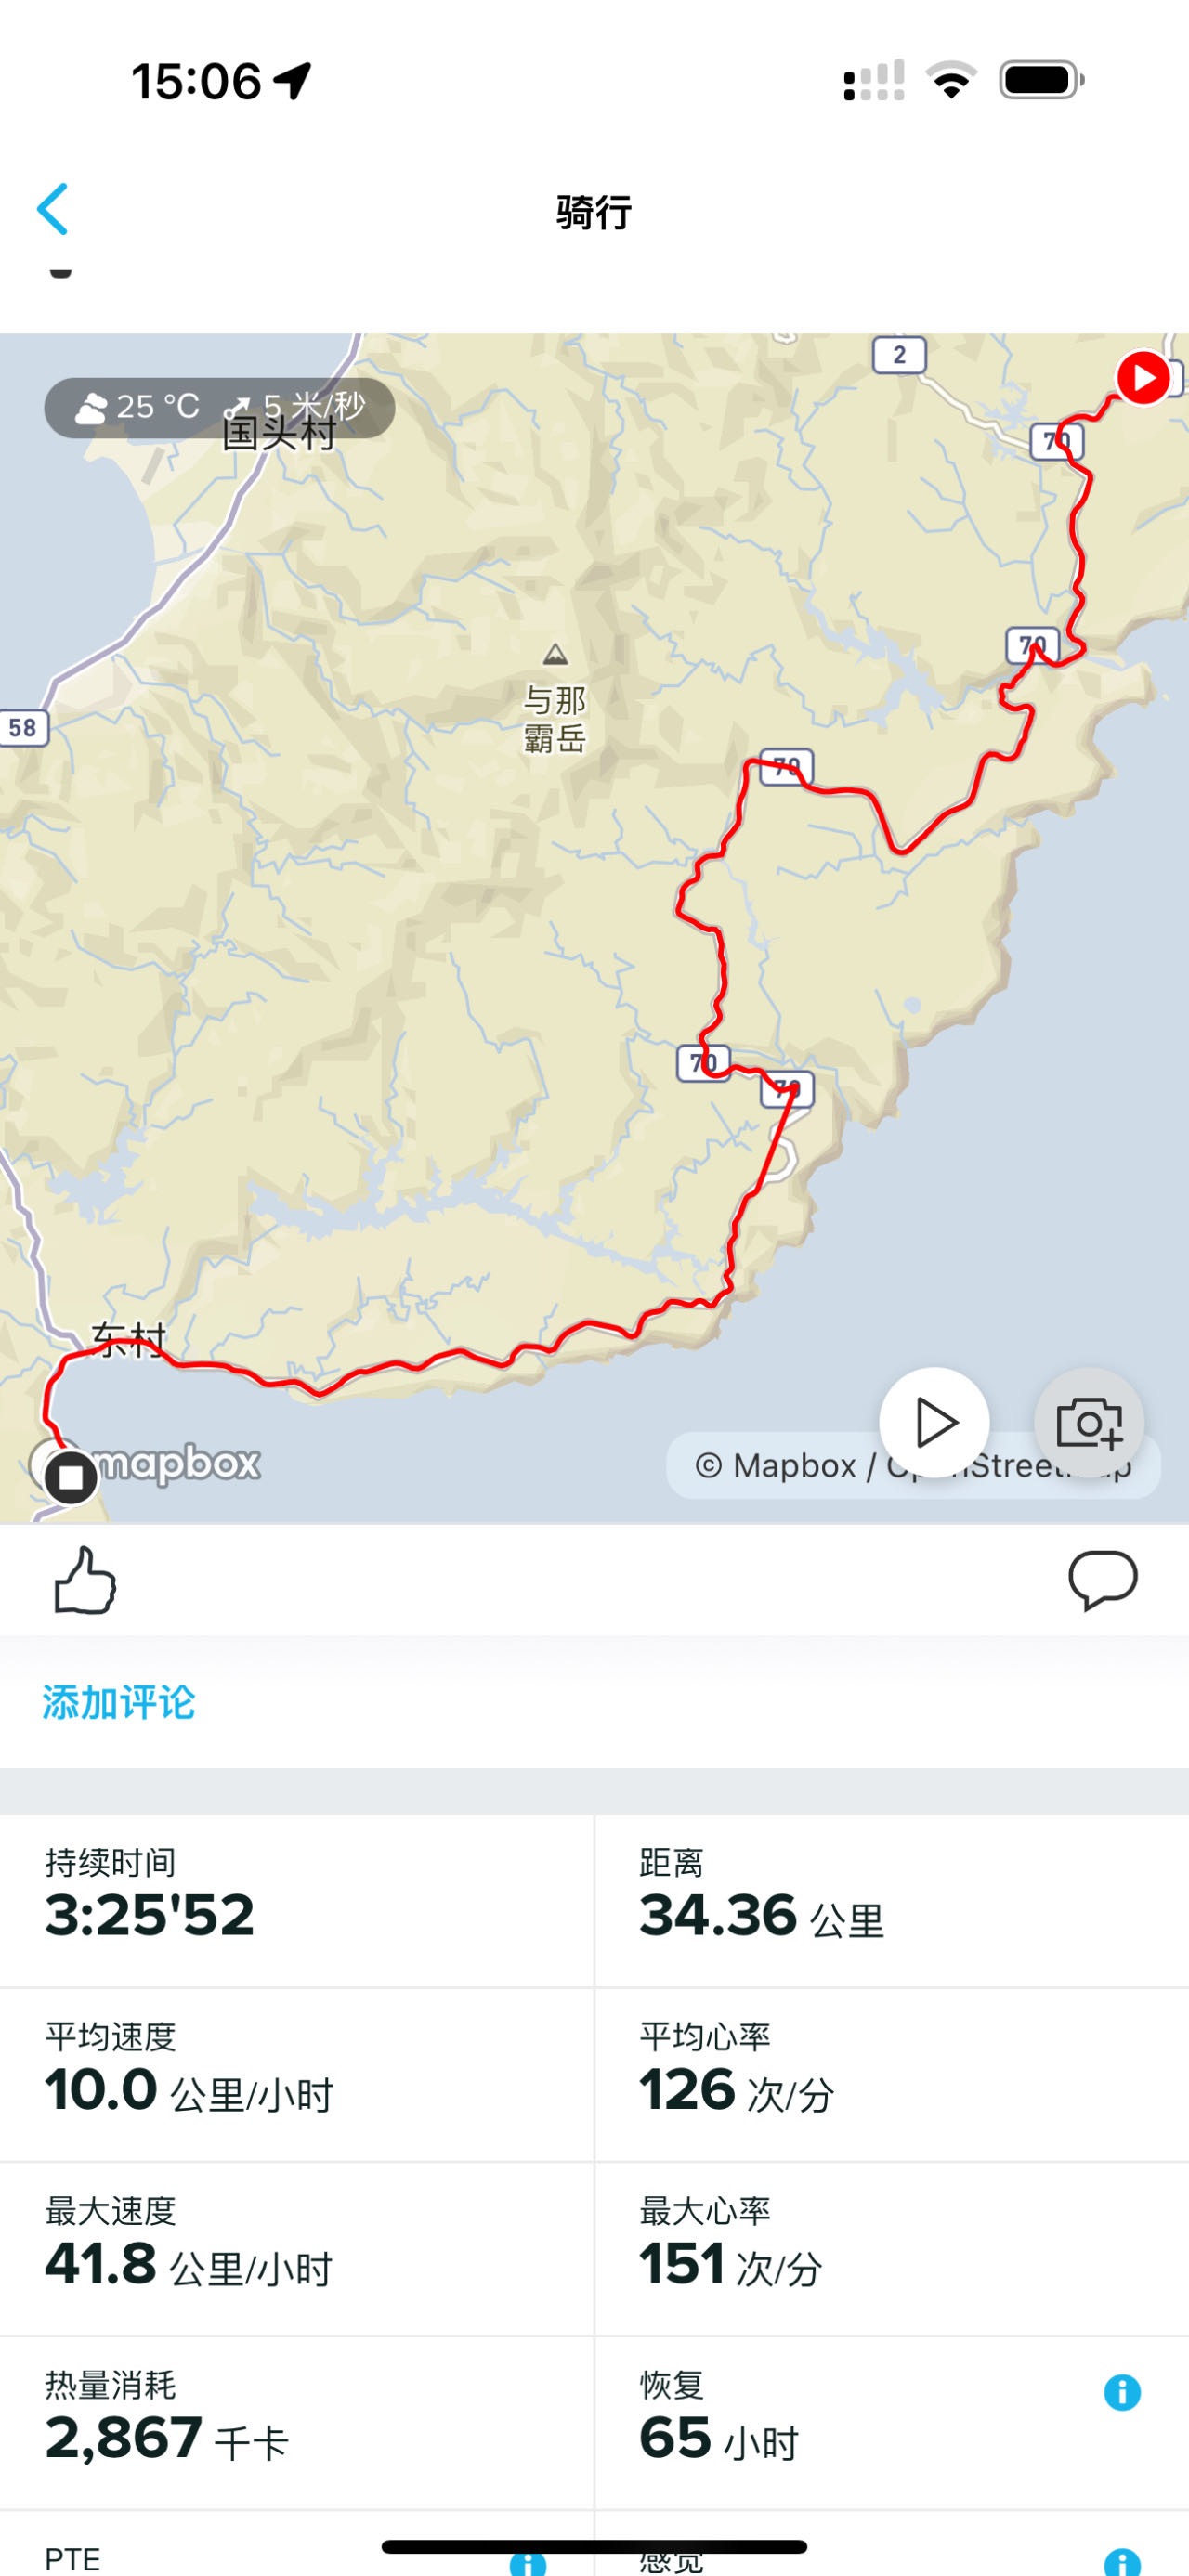 冲绳骑行第四天